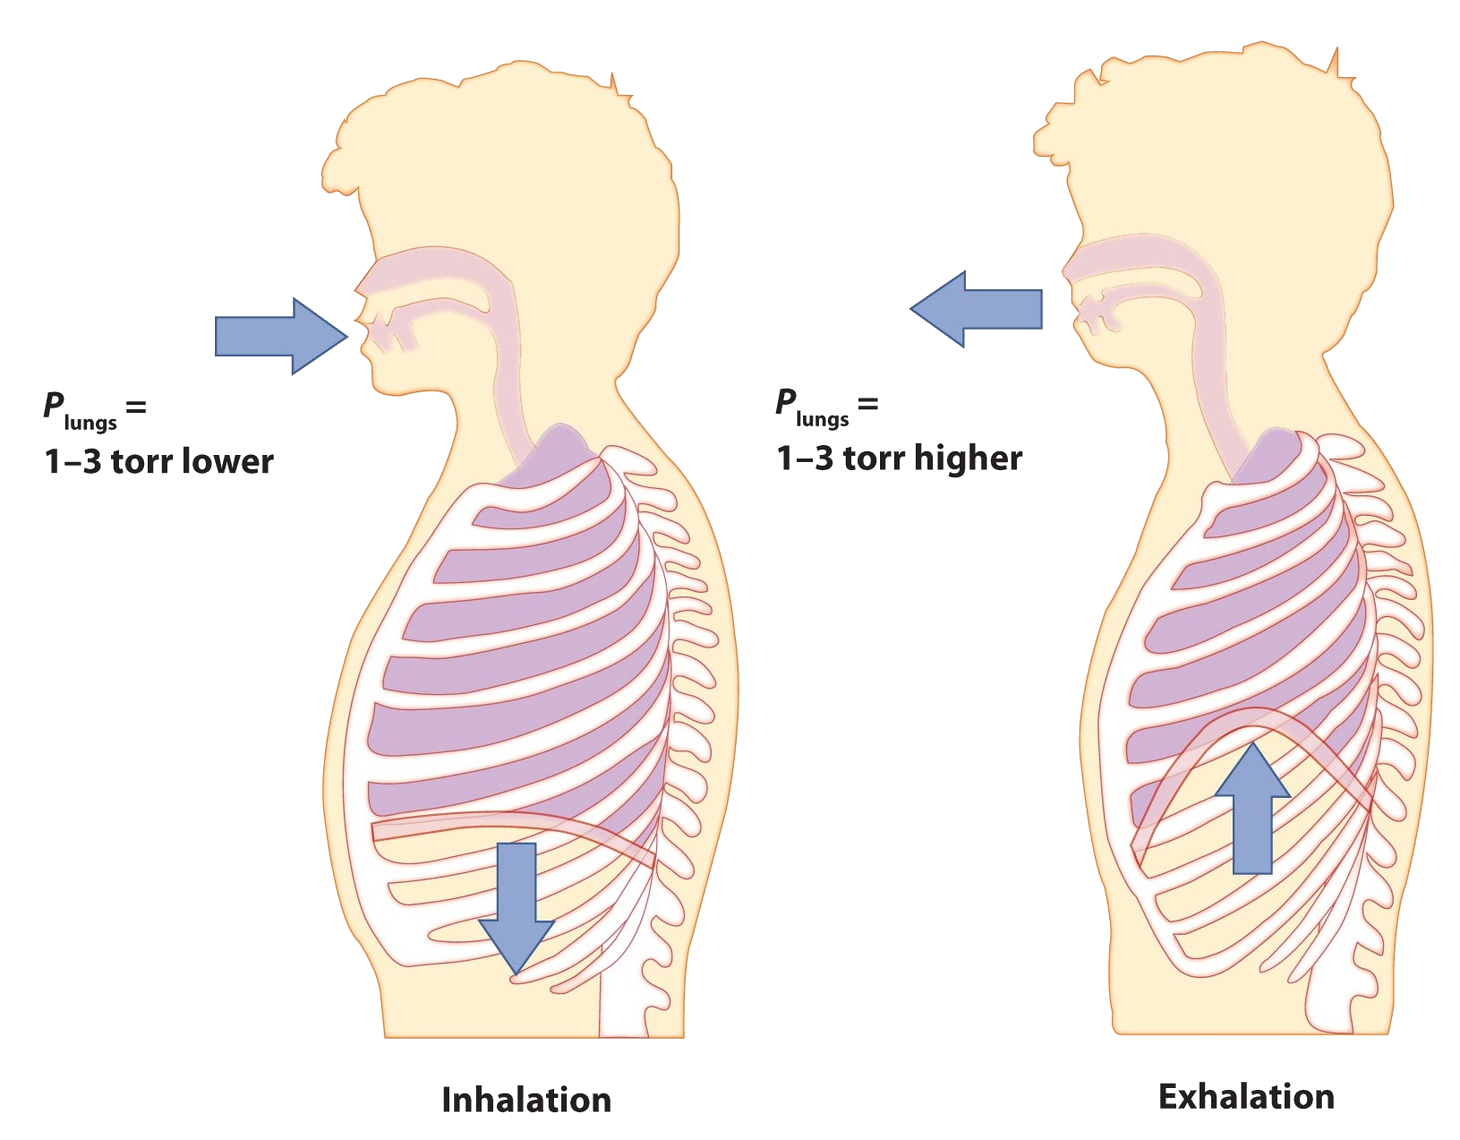 Diagrama de un ser humano durante la inhalación (izquierda) y exhalación (derecha).